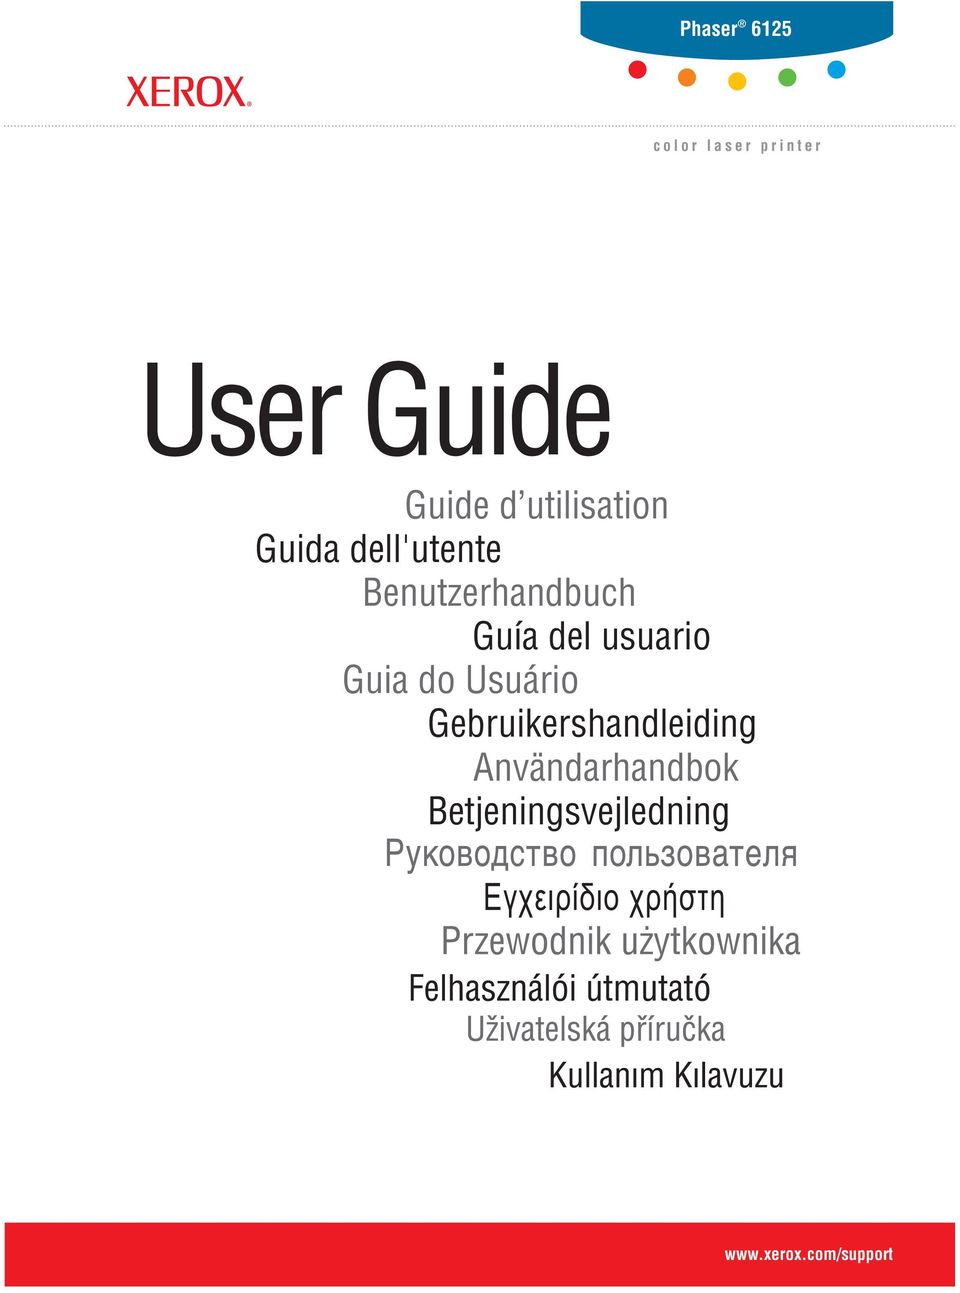 del usuario Guia do Usuário Gebruikershandleiding